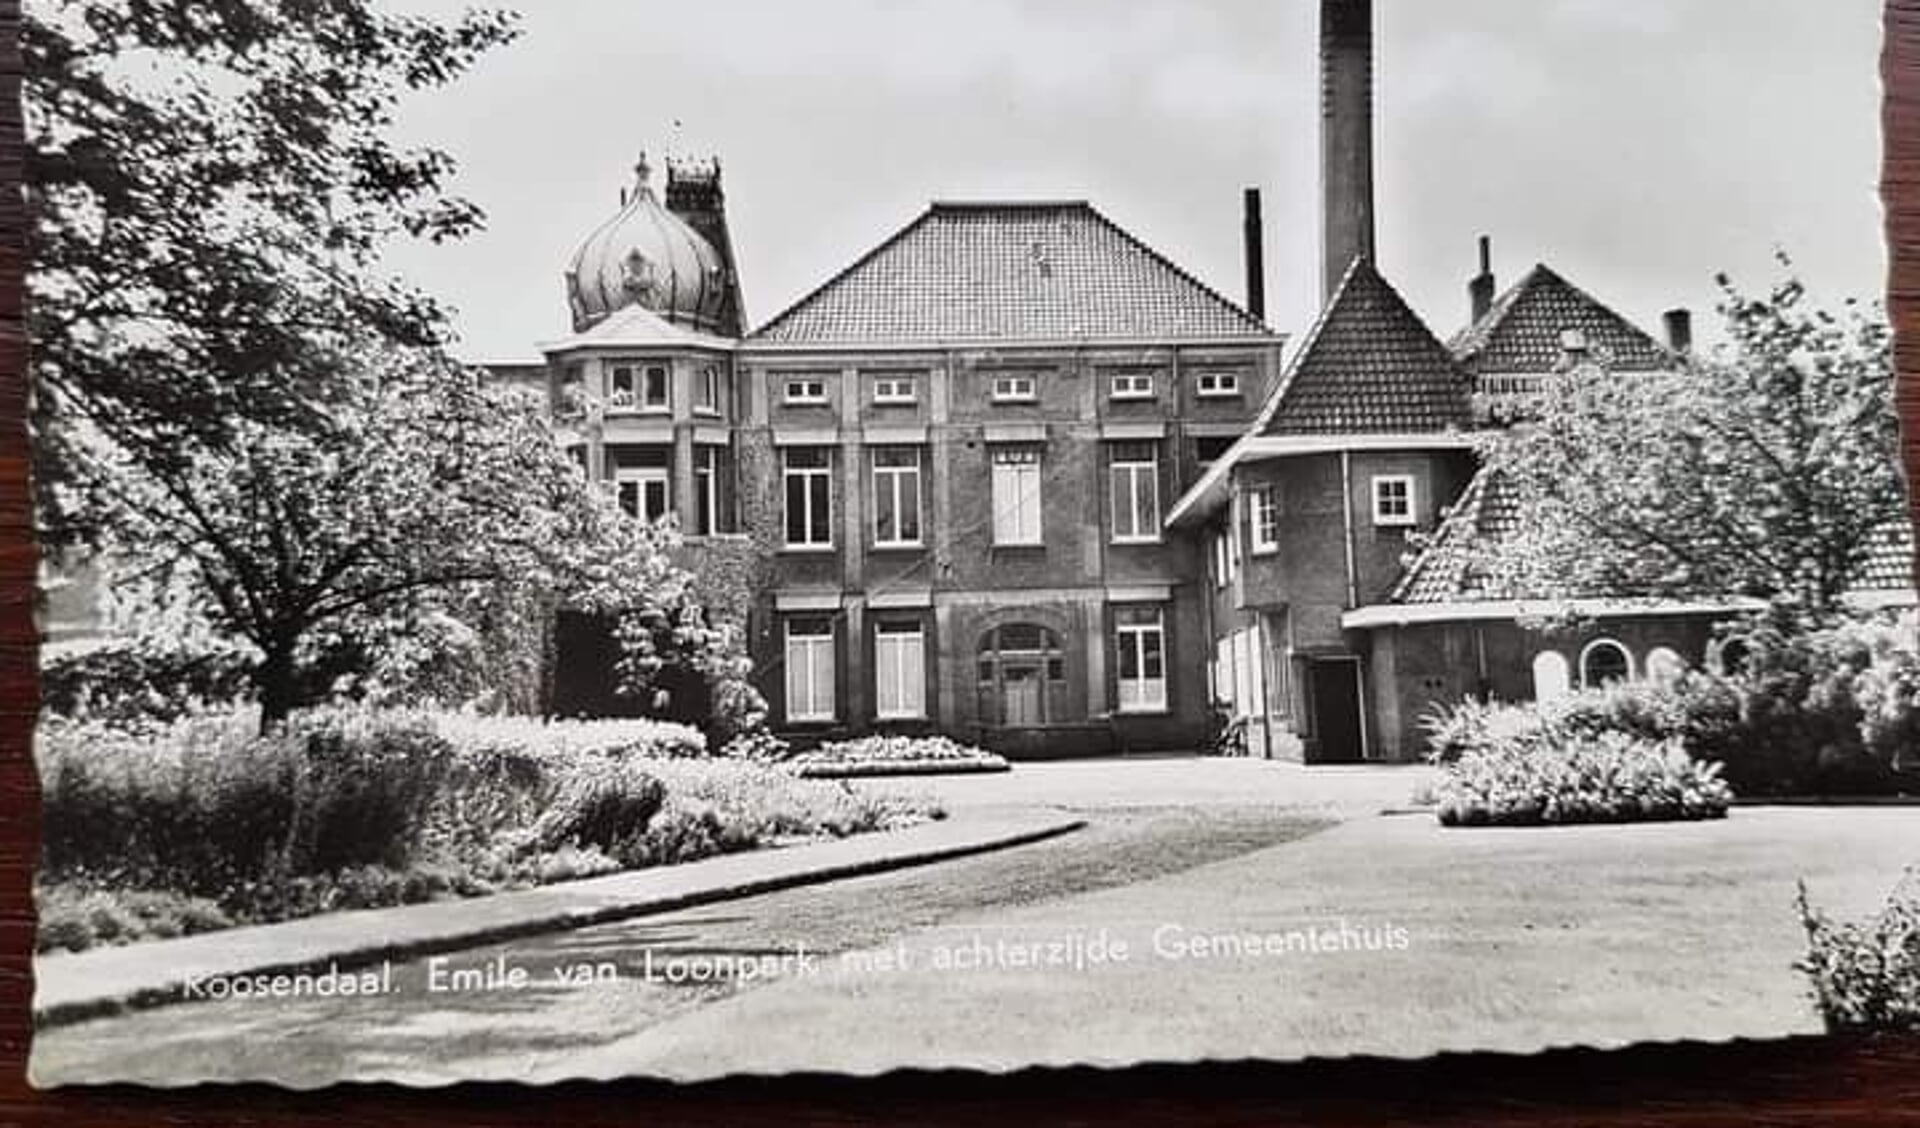 Emile van Loonpark met achterzijde gemeentehuis.